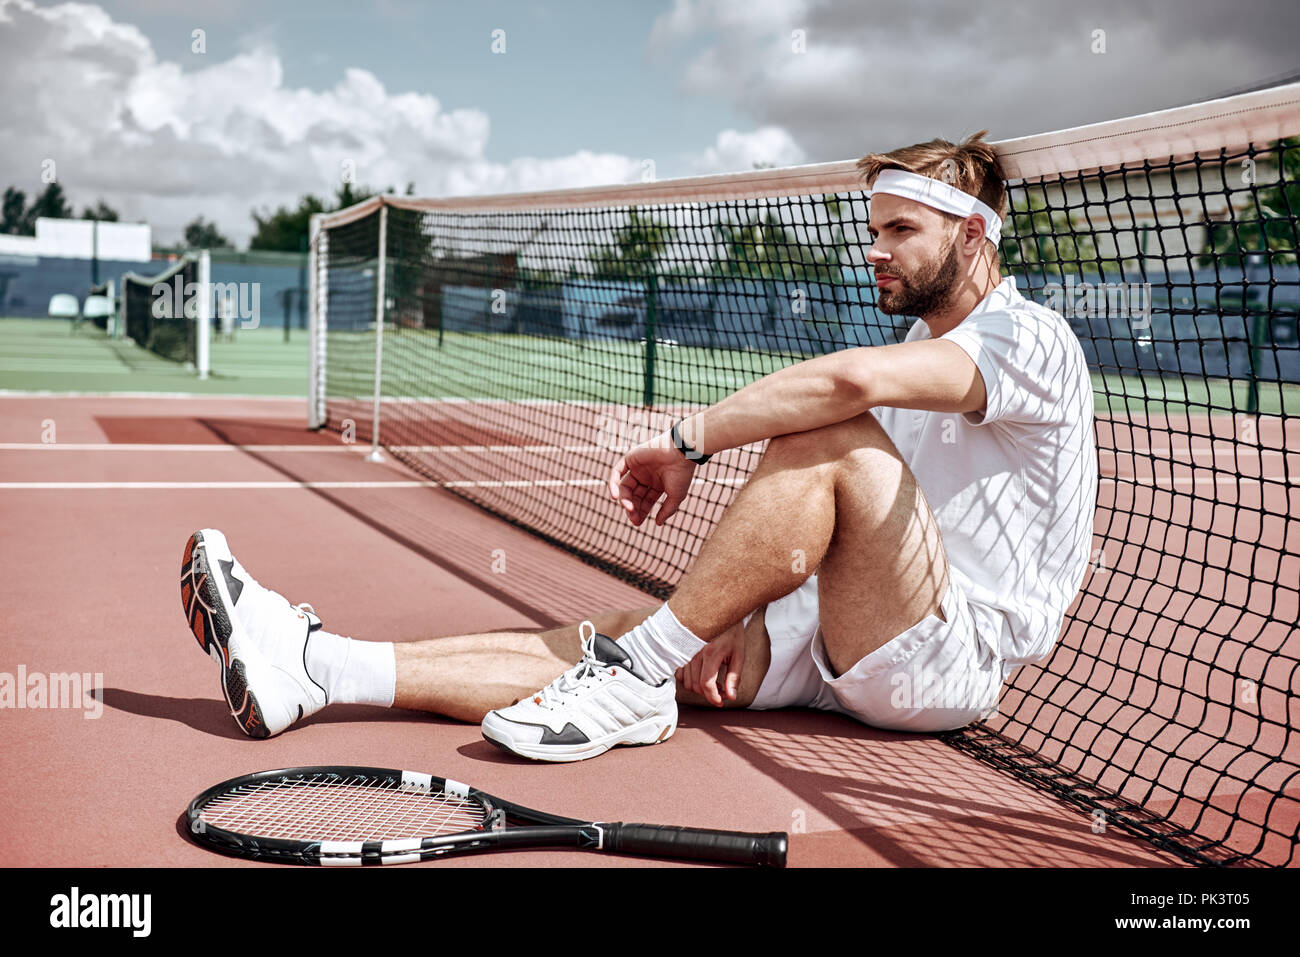 Se détendre après une bonne partie. Cheerful man au repos assis sur le net tennis tennis Banque D'Images